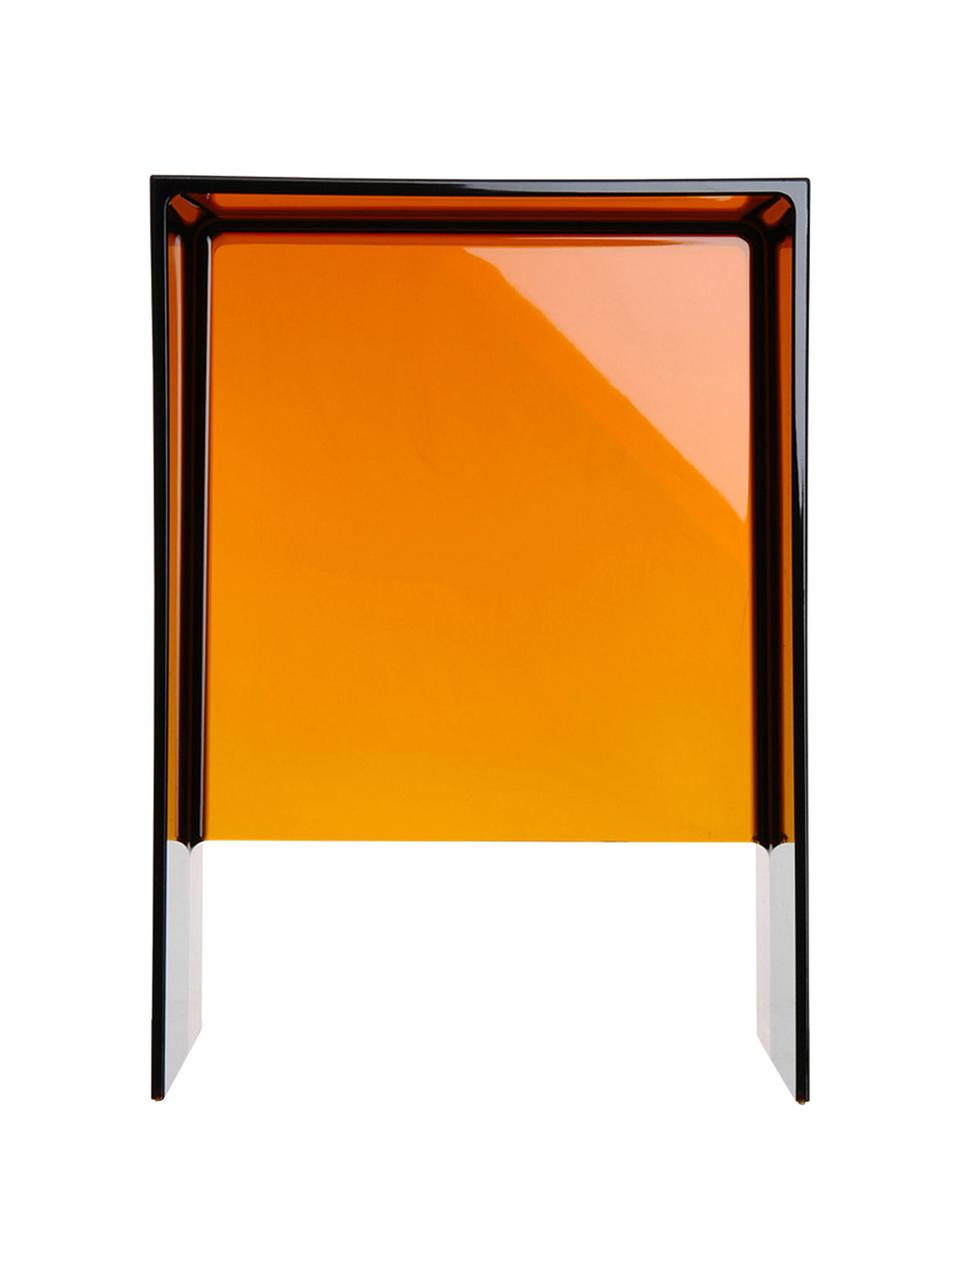 Stolik pomocniczy Max-Beam, Barwiony, transparentny polipropylen z certyfikatem Greenguard, Odcienie bursztynowego, S 33 x W 47 cm